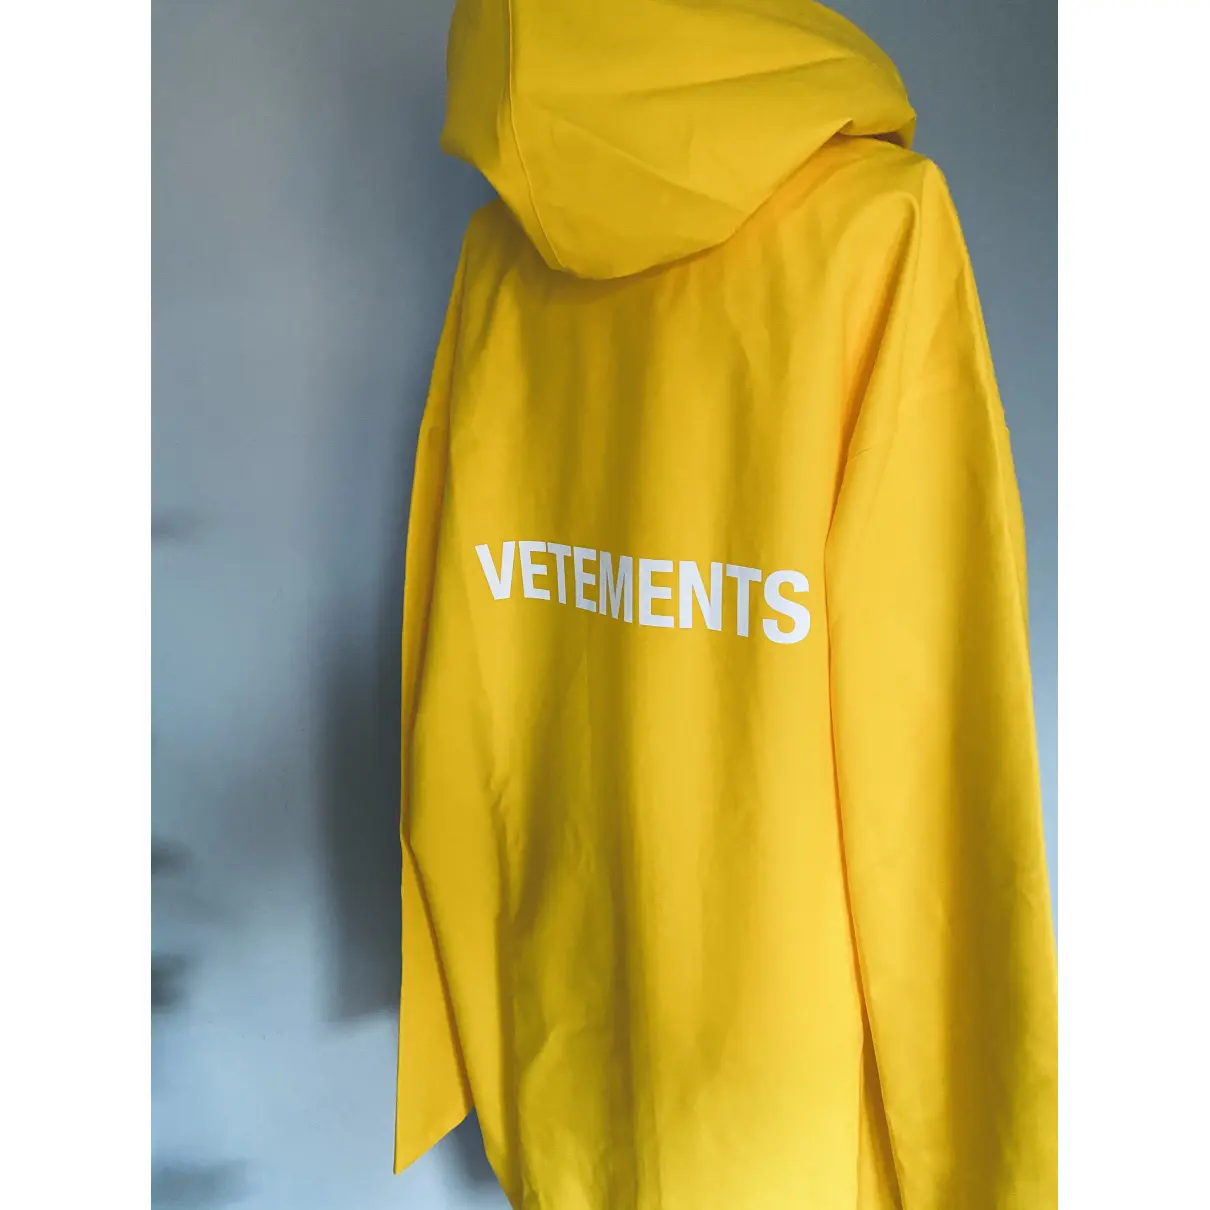 Buy Vetements Coat online